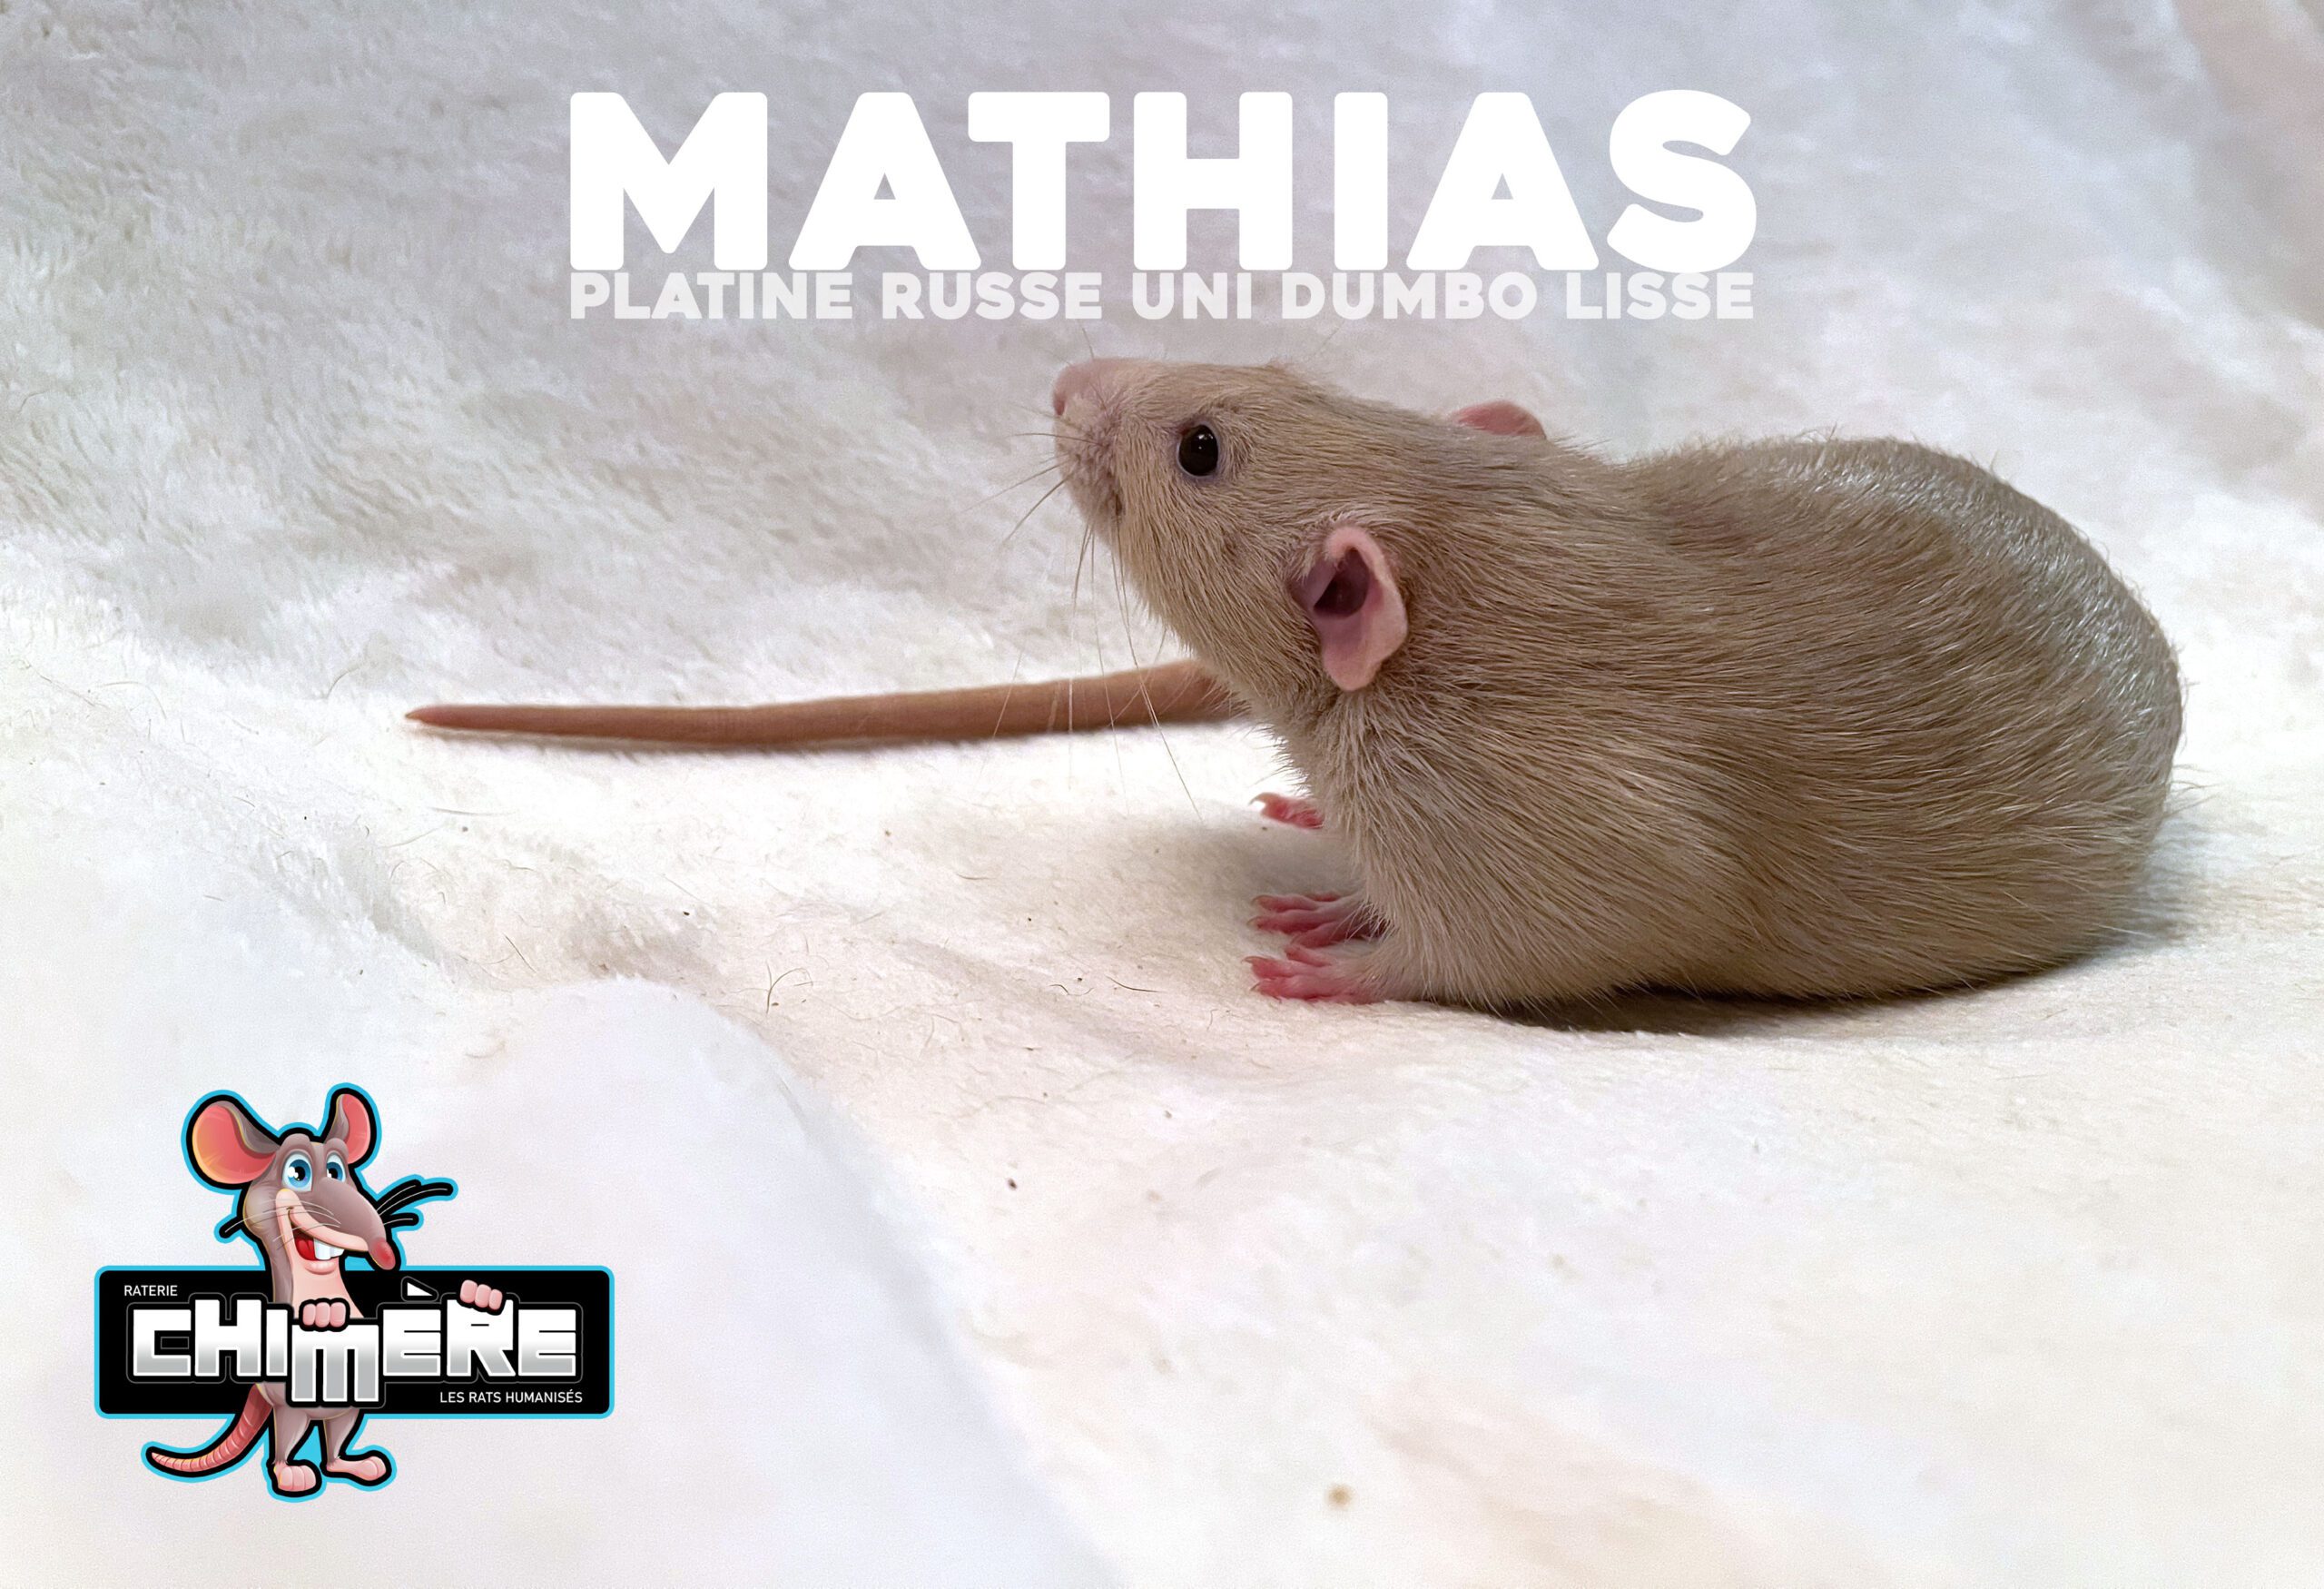 rat issu d'une méthode d'élevage de rats - rat platine russe uni dumbo lisse